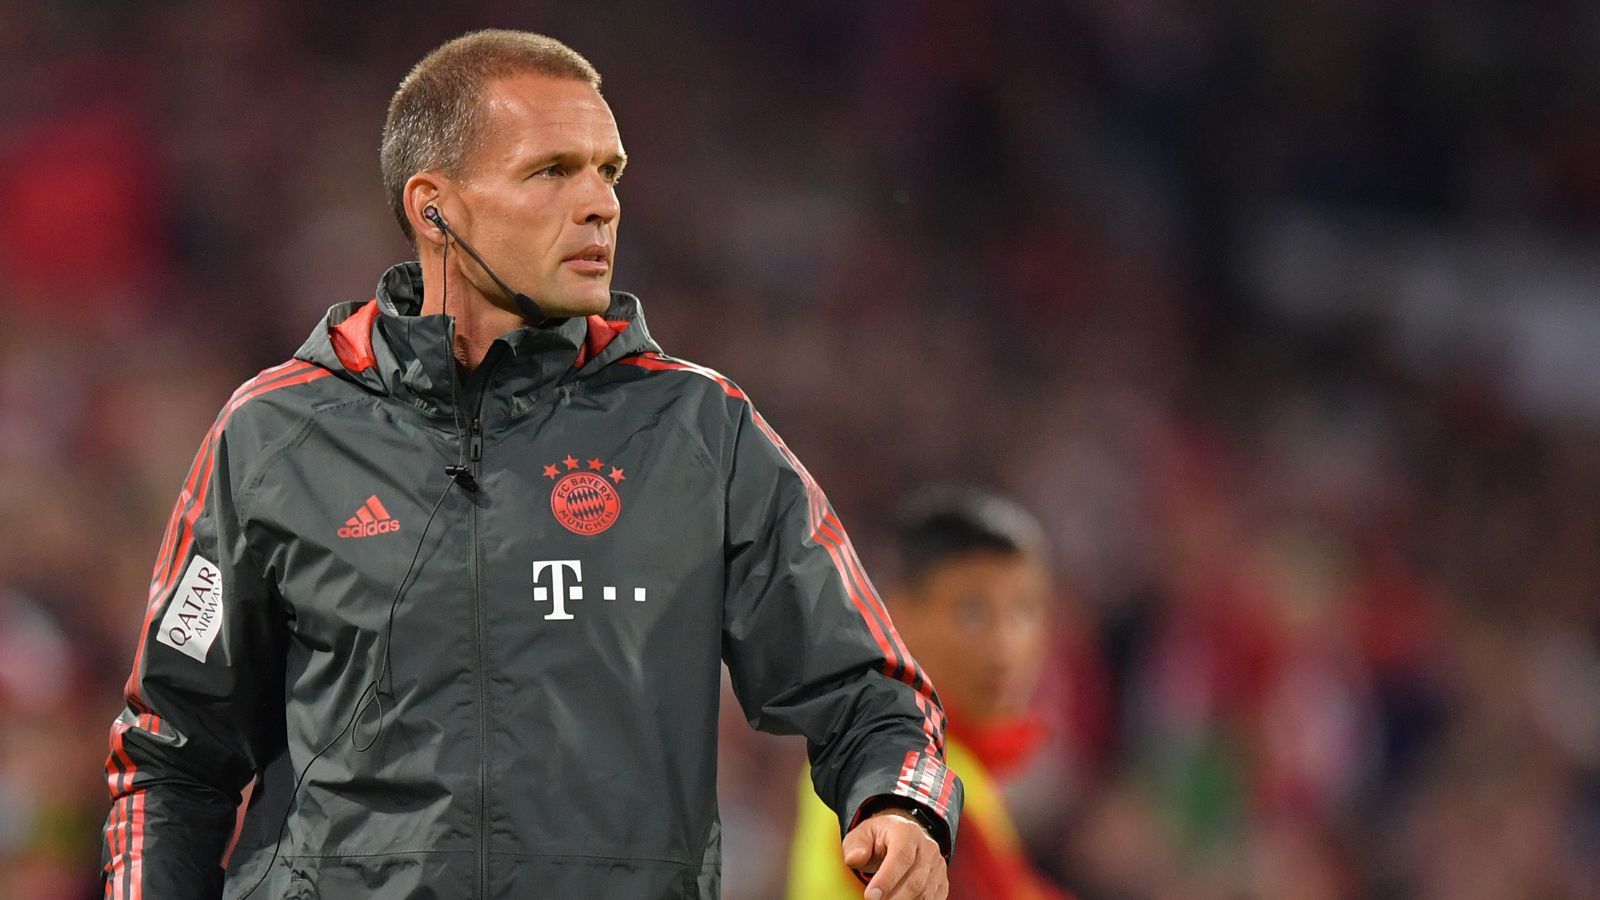 
                <strong>Holger Broich</strong><br>
                Prof. Dr. Holger Broich ist seit 2014 als Fitnesstrainer beim FC Bayern tätig. Zuvor leitete er dieses Amt von 2003 bis 2014 bei Bayer 04 Leverkusen. Auch unter Tuchel ist er beim FC Bayern aktiv.
              